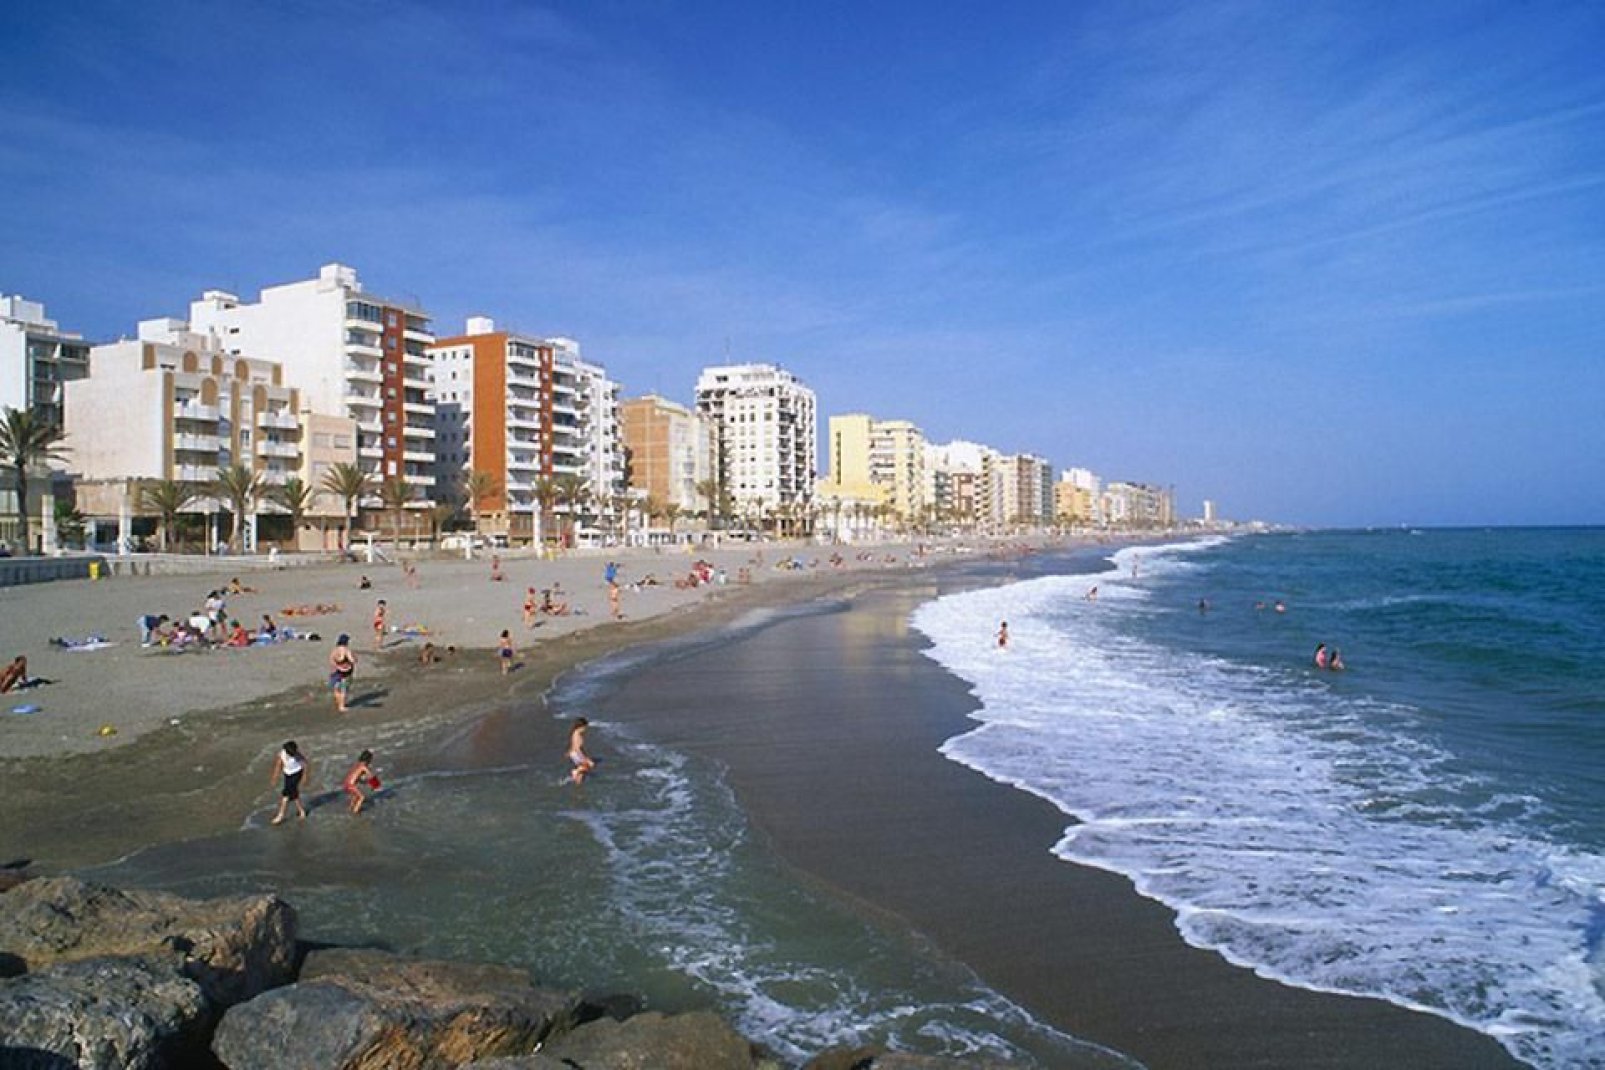 Almería es famosa por sus playas de arena fina. Aquí también encontramos la playa nudista más grande de Europa.